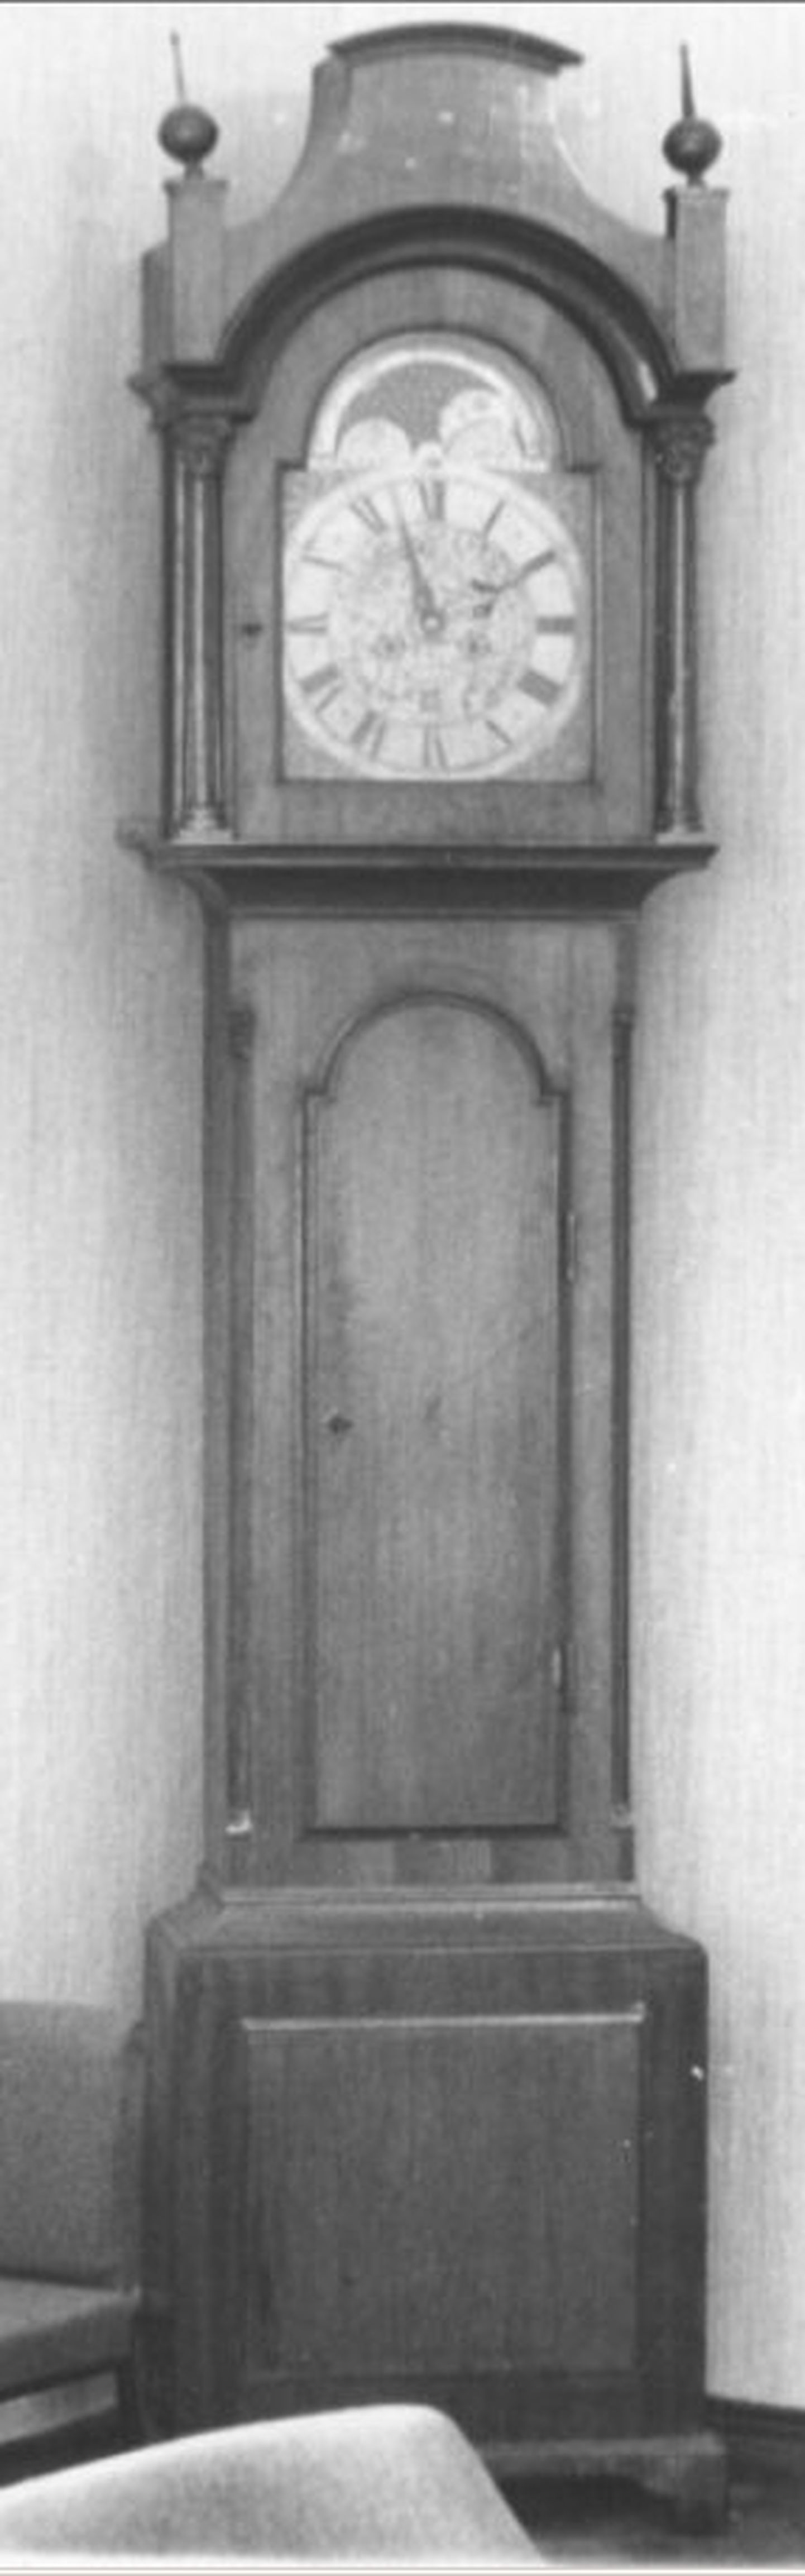 Põrandakell, Inglise töö, 18. sajand (puu, metall), kunstimälestis, arvel 20. juunist 1995, asukoht tuvastamata.